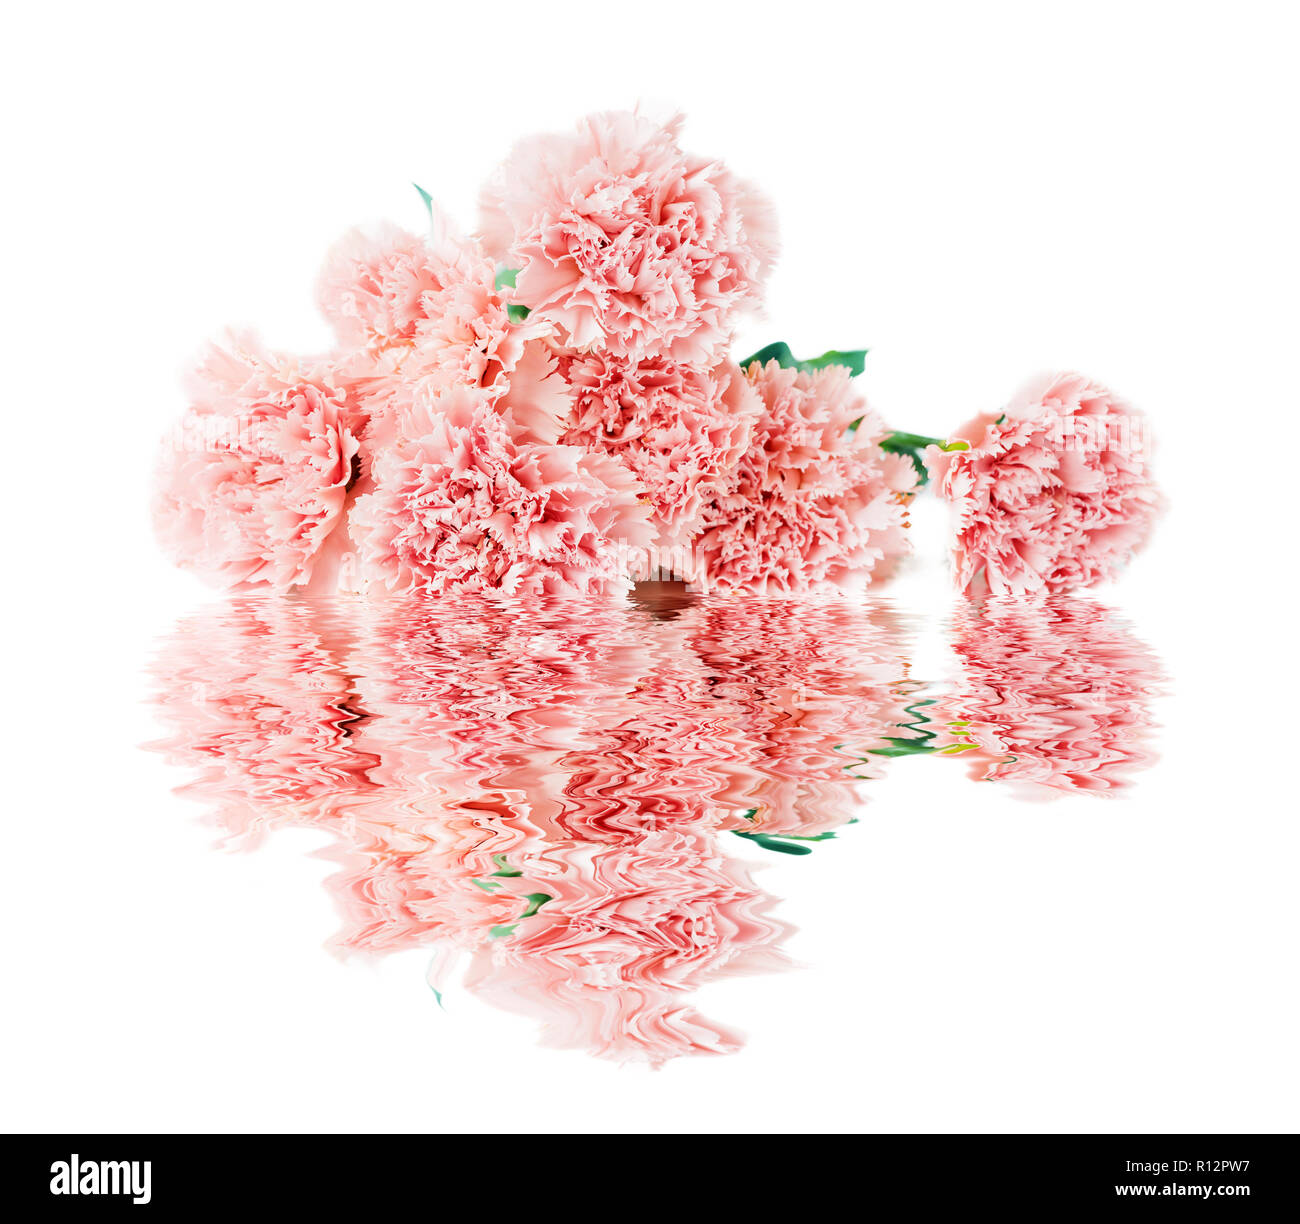 Beau bouquet de délicates fleurs d'Oeillets roses avec réflexion en surface de l'eau isolé sur fond blanc Banque D'Images